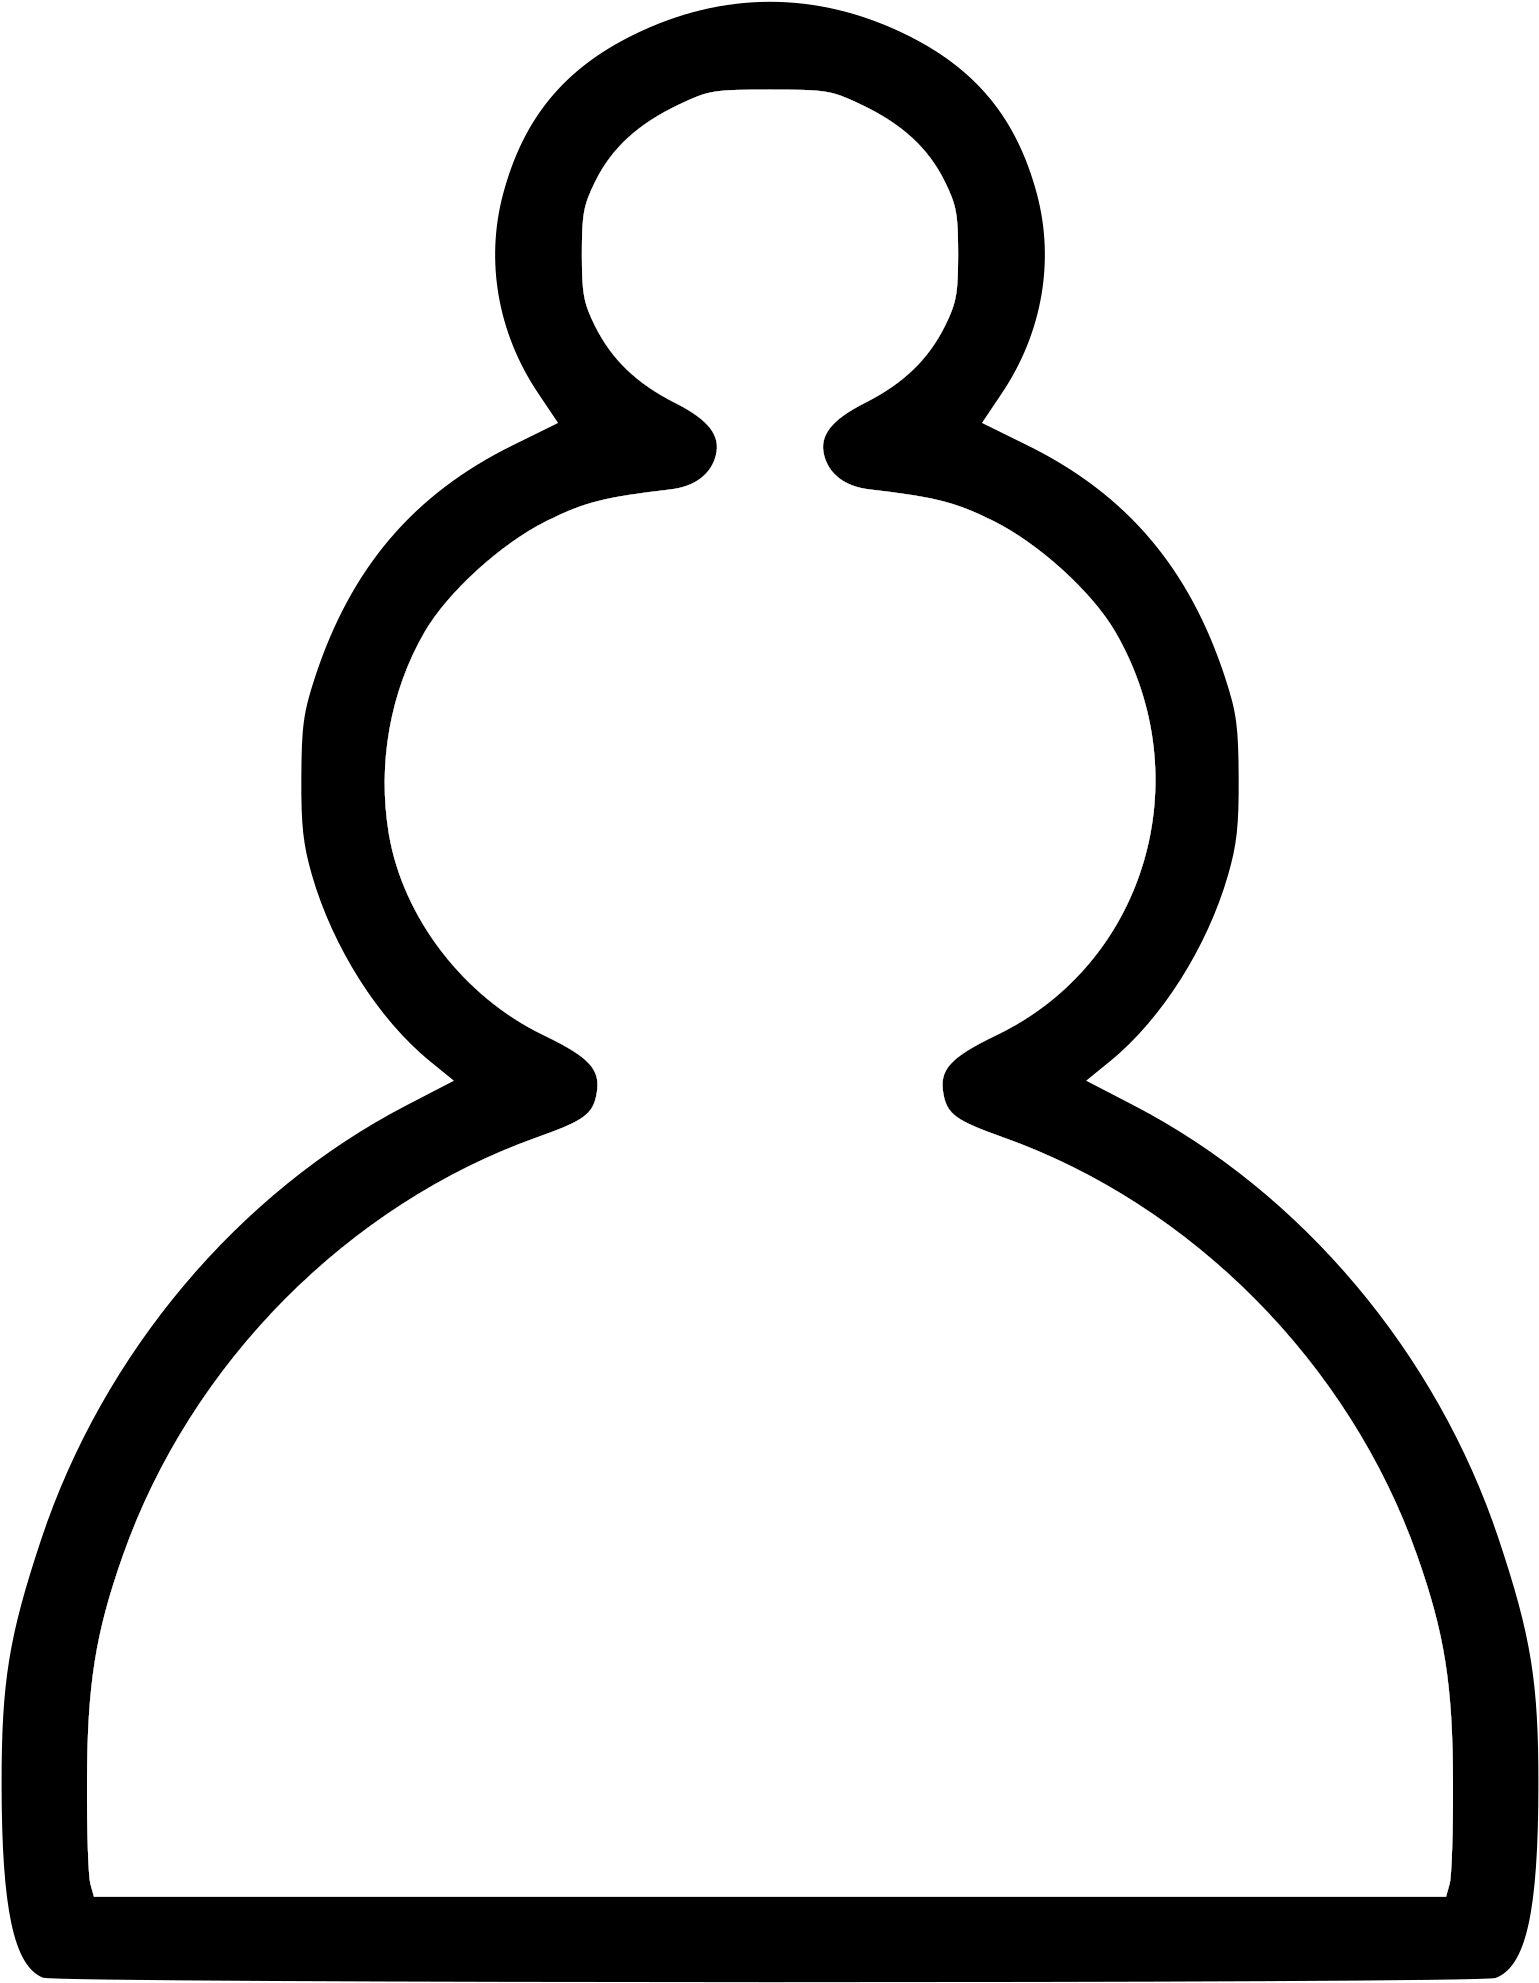 Pawn 3 - Chess Pawn Clip Art (2400x2400)